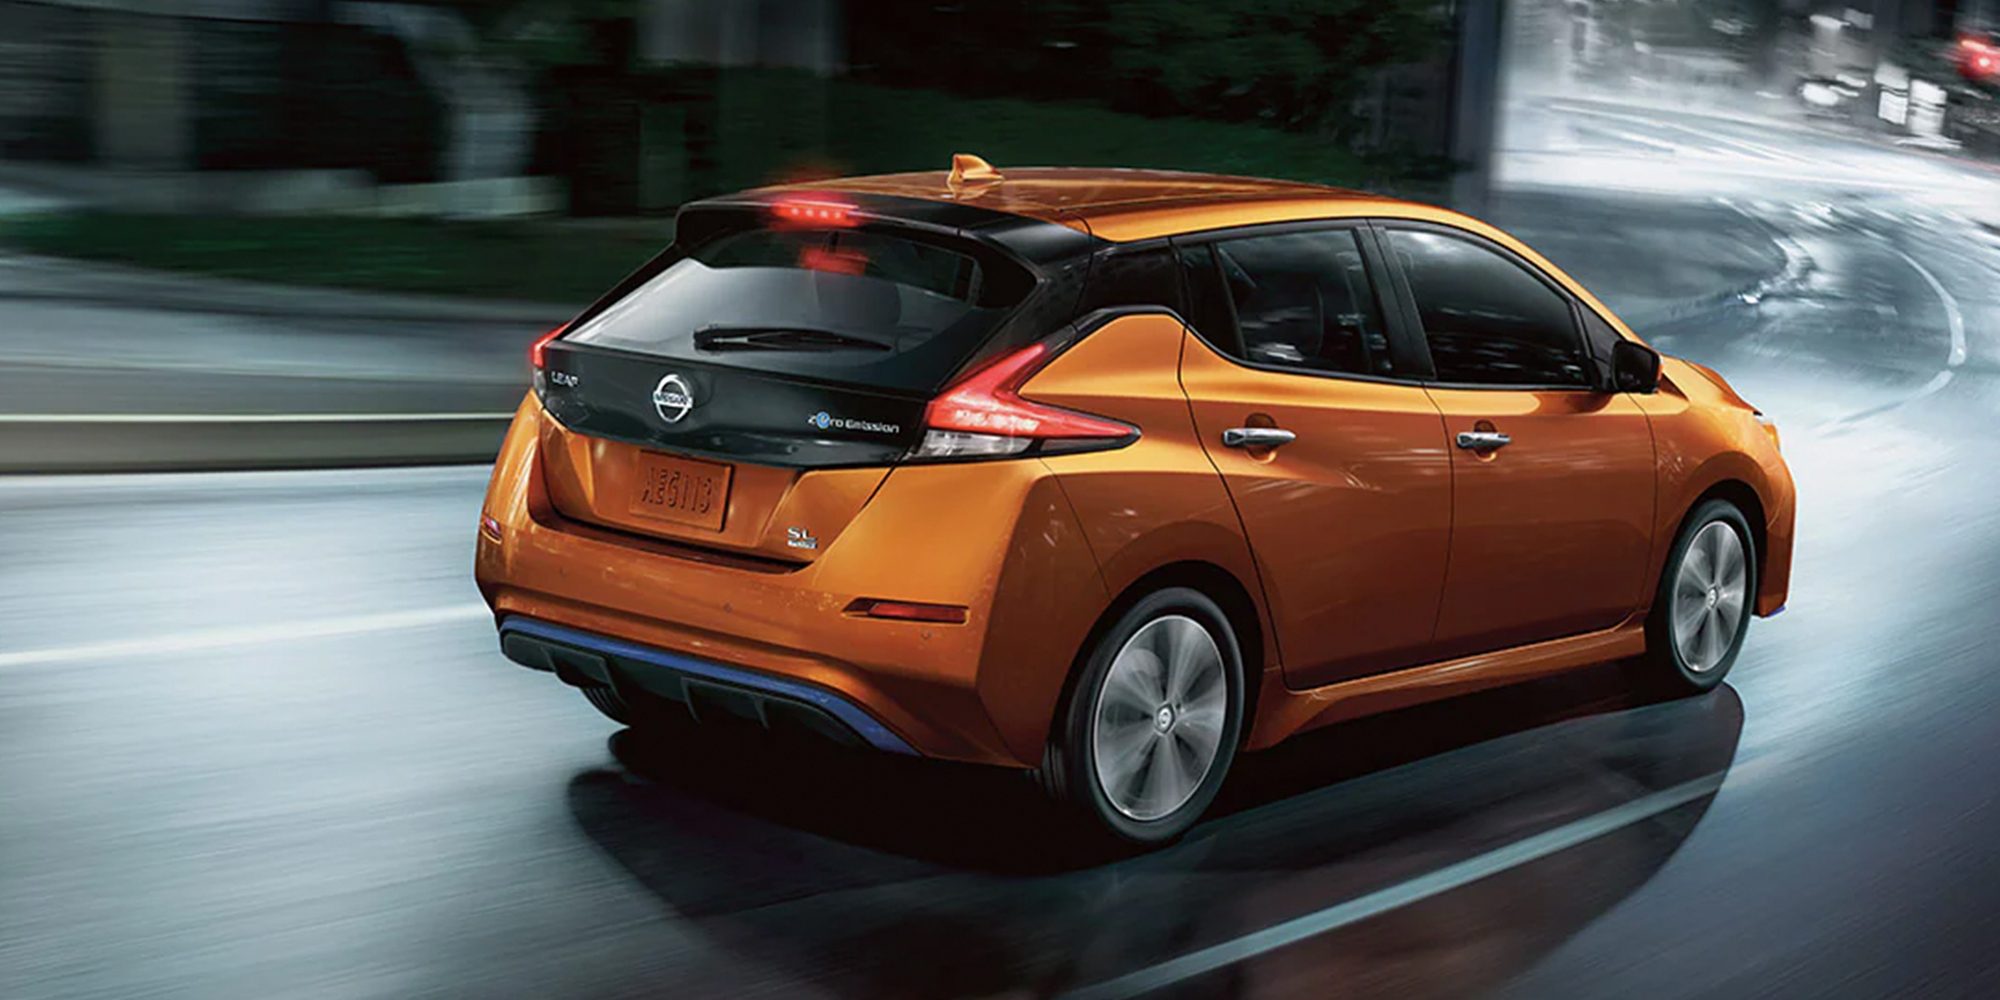 นิสสันอเมริกา ใจดีปล่อยโปรเช่ารถ 2022 Nissan Leaf นาน 2 ปี, จ่ายเดือน